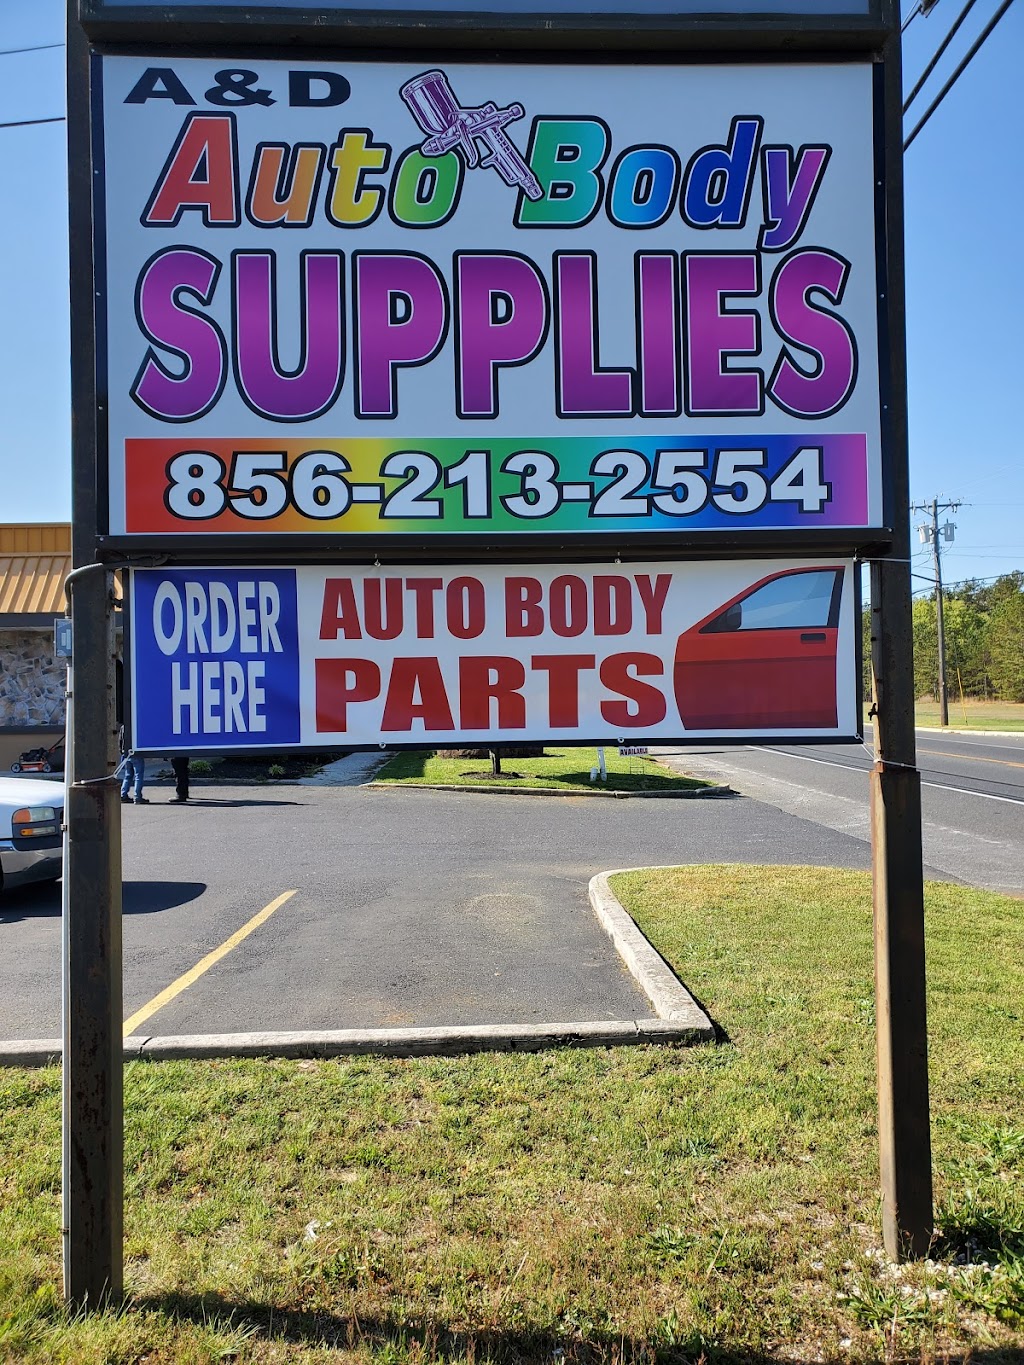 A & D Autobody Supplies | 2587A S Delsea Dr, Vineland, NJ 08360 | Phone: (856) 213-2554